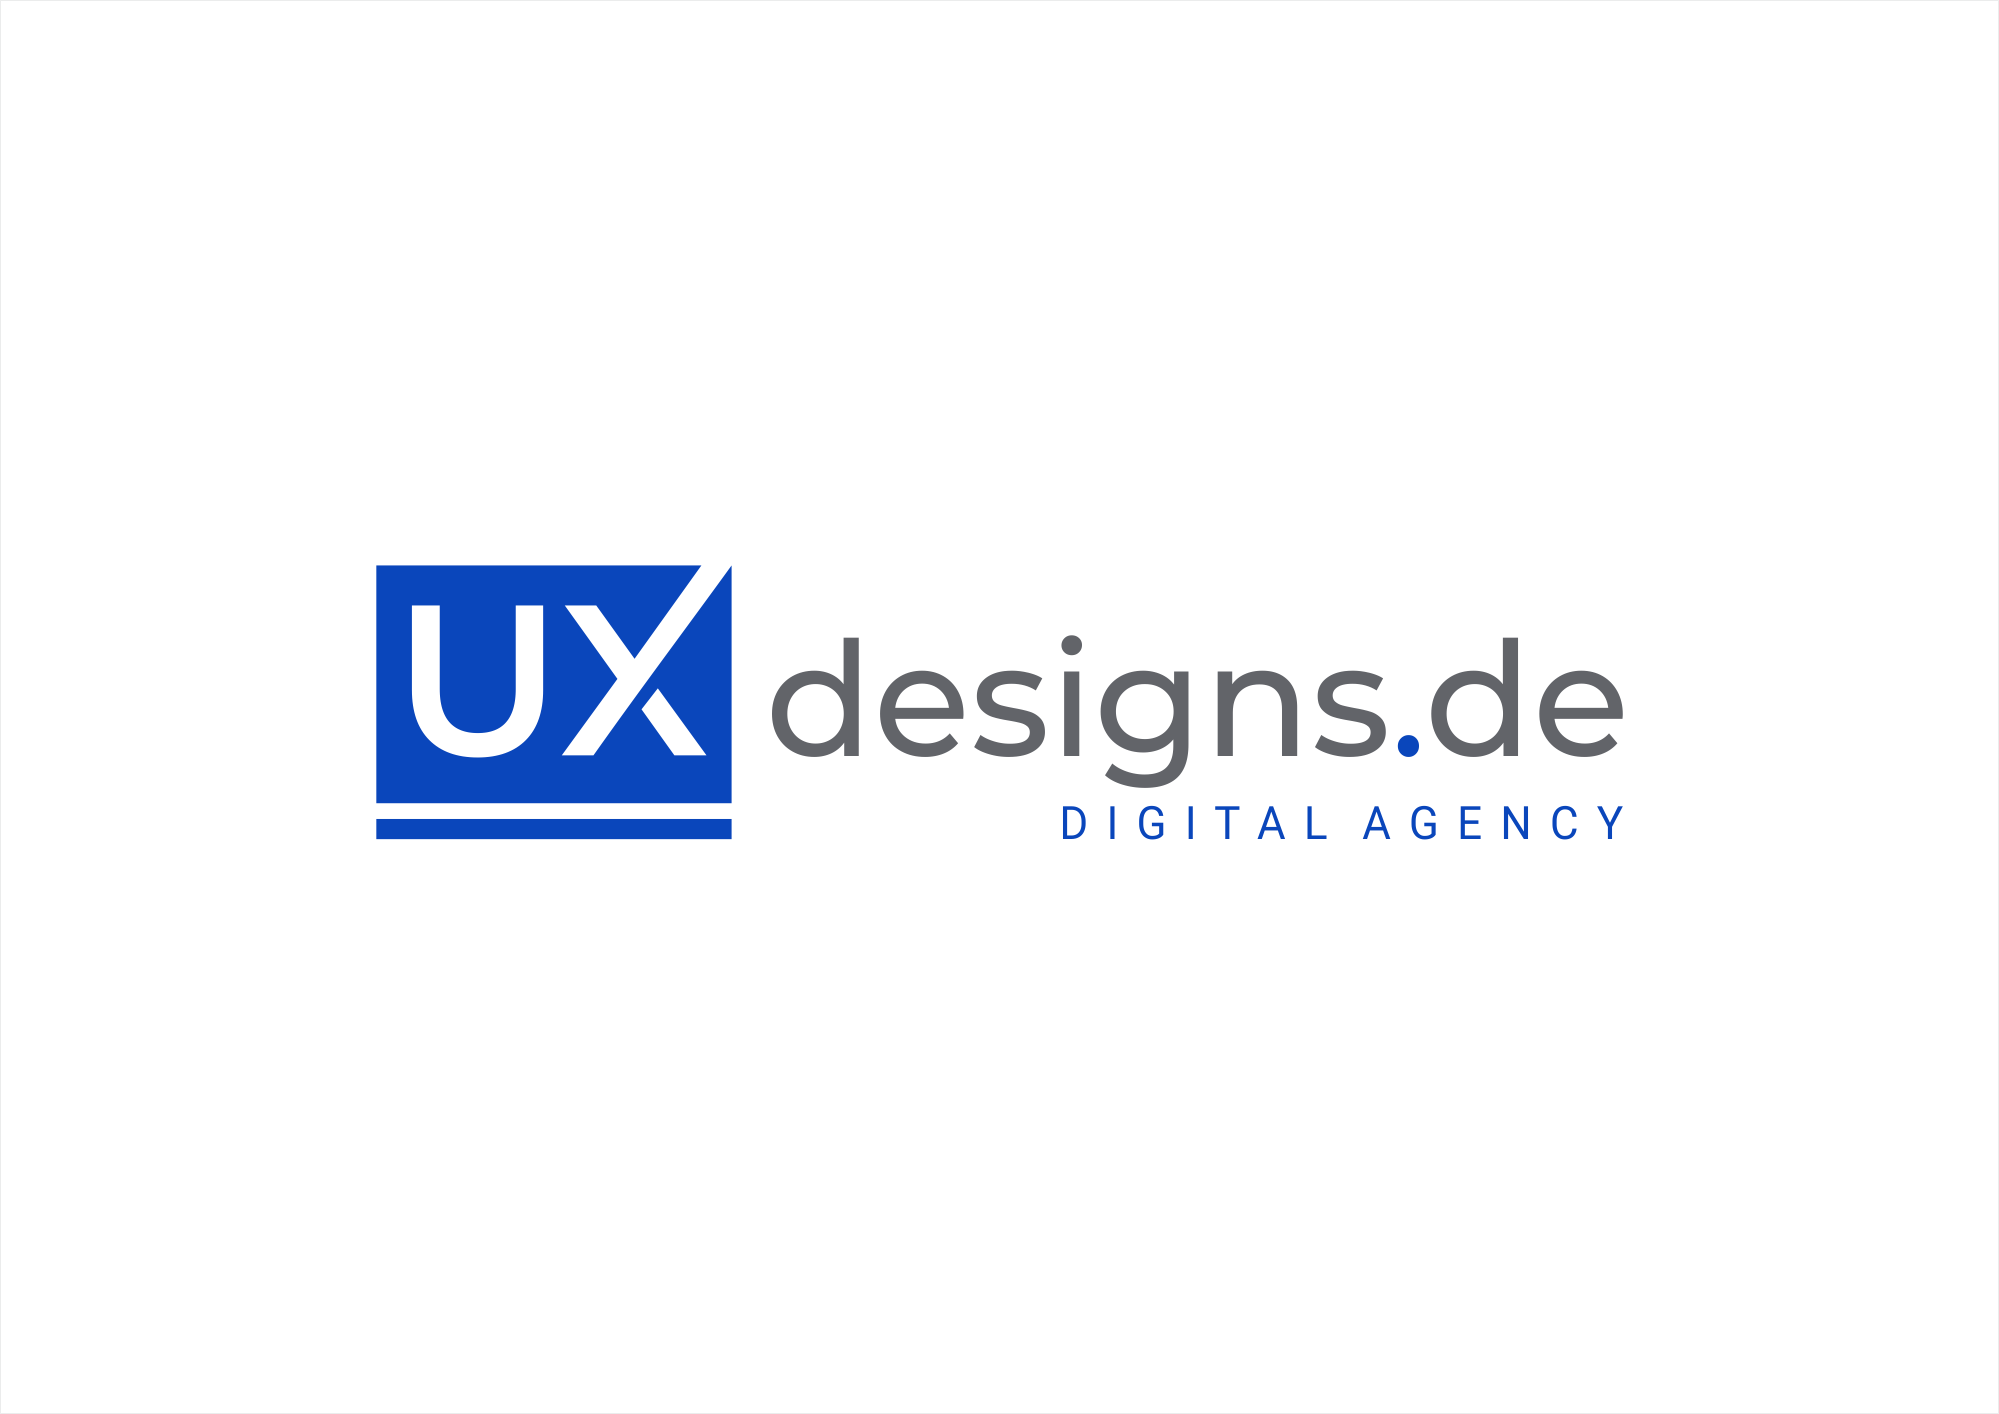 uxdesigns.de - Corporate Design | Design Portfolio